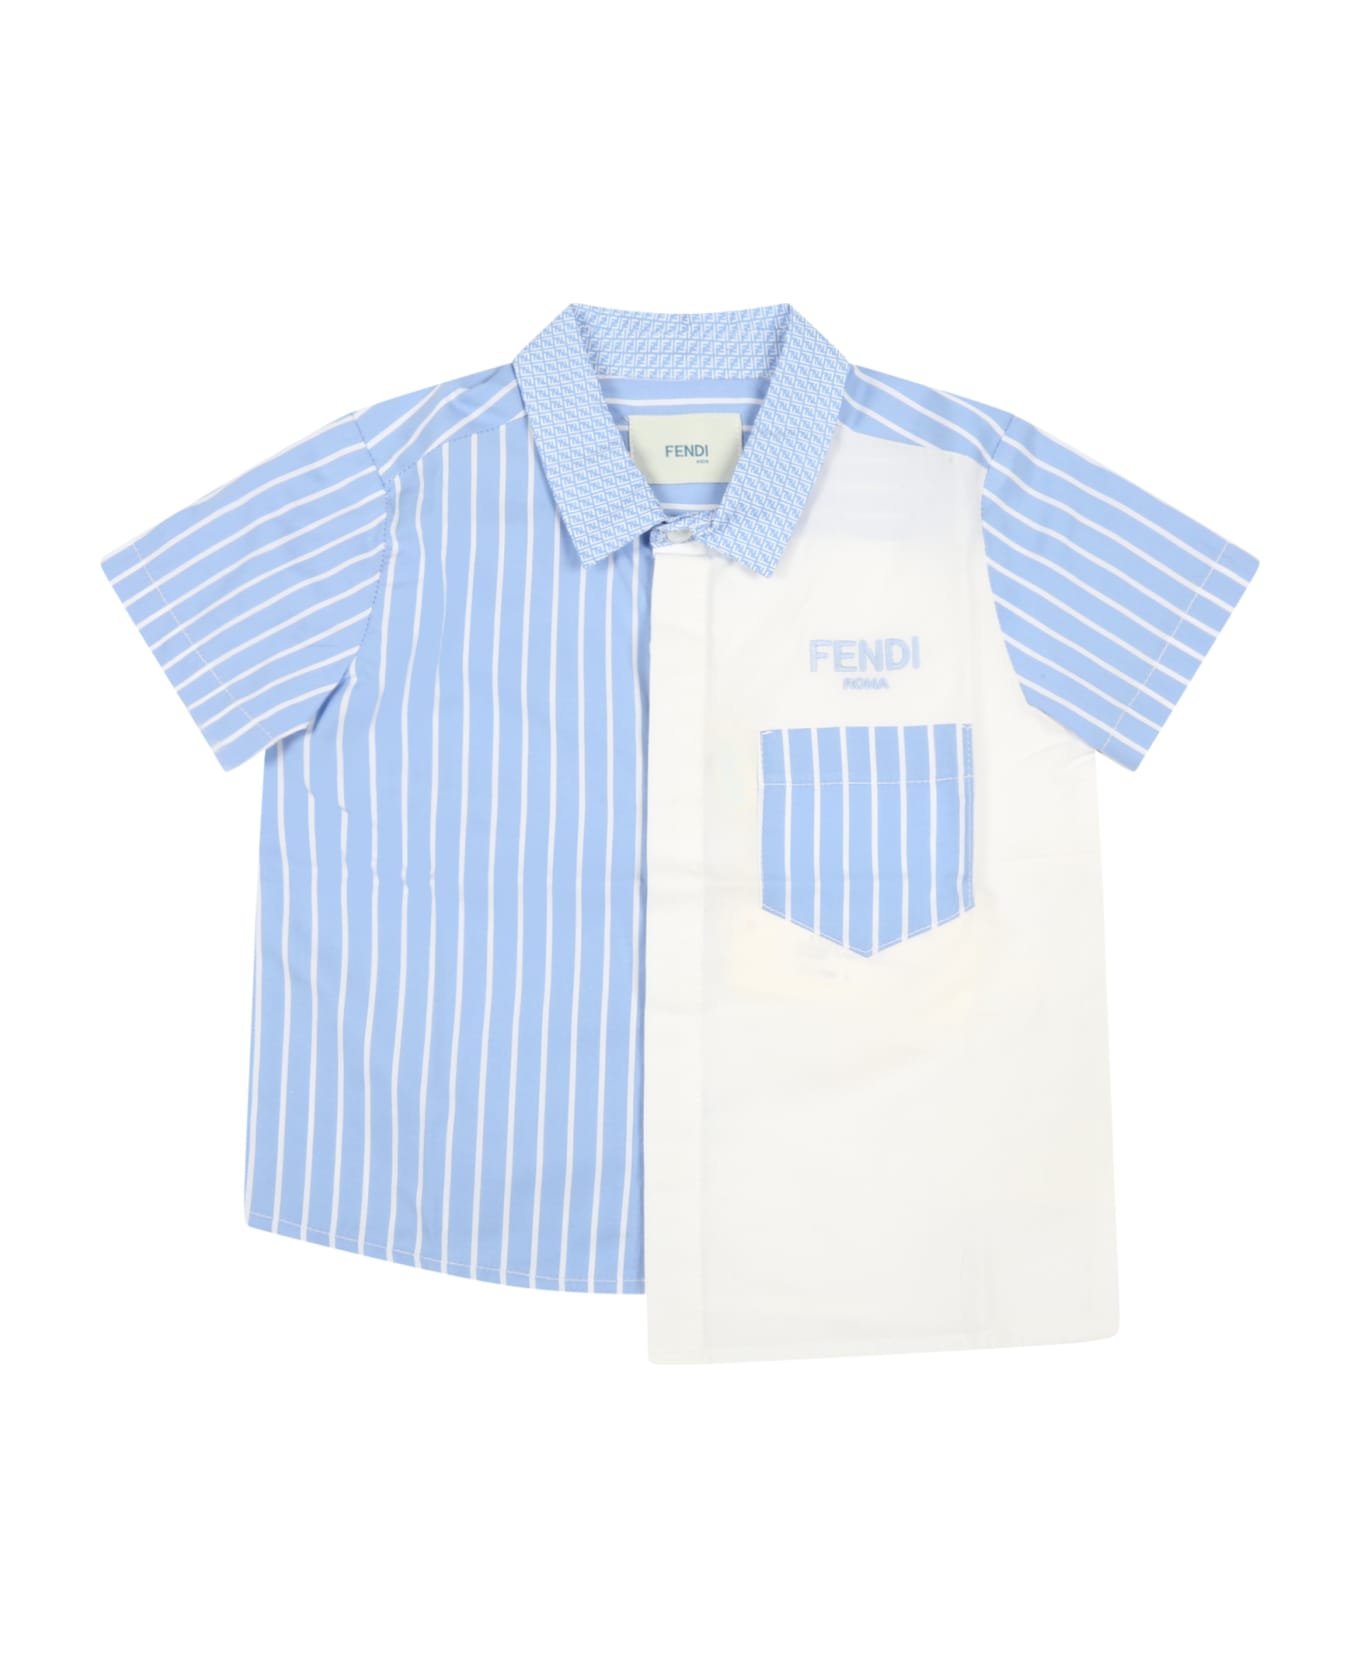 Fendi Multicolor Shirt For Baby Boy With Logos - Multicolor